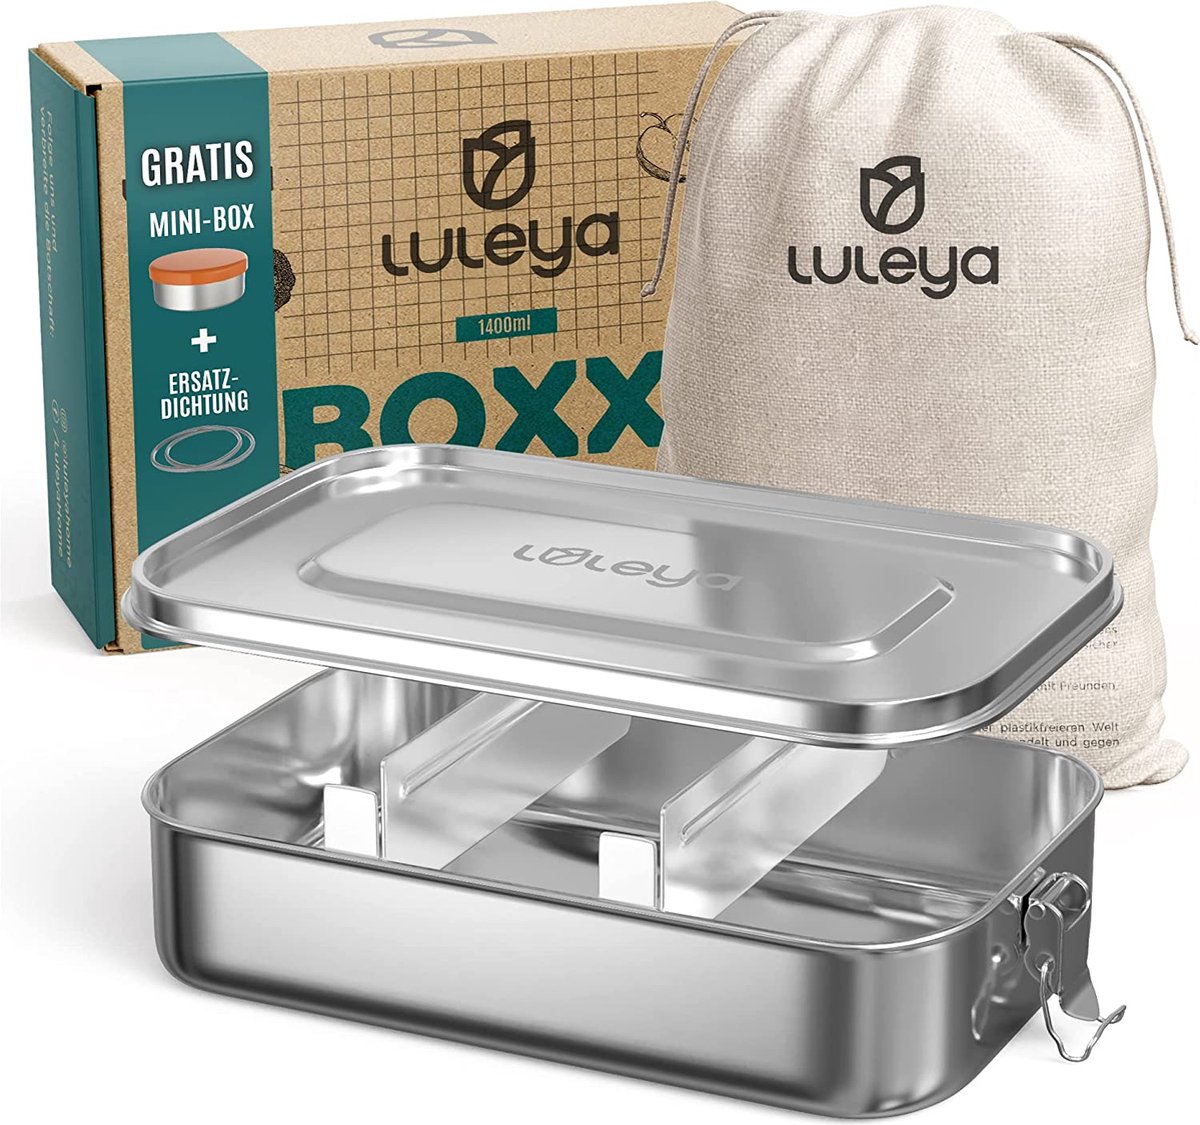 Luleya Premium broodtrommel roestvrij staal met vakken, 1400 ml, groot, lekvrije bentobox, lunchbox voor kinderen en volwassenen, incl. mini-doos, reserveafdichting, scheidingswanden en opbergzak